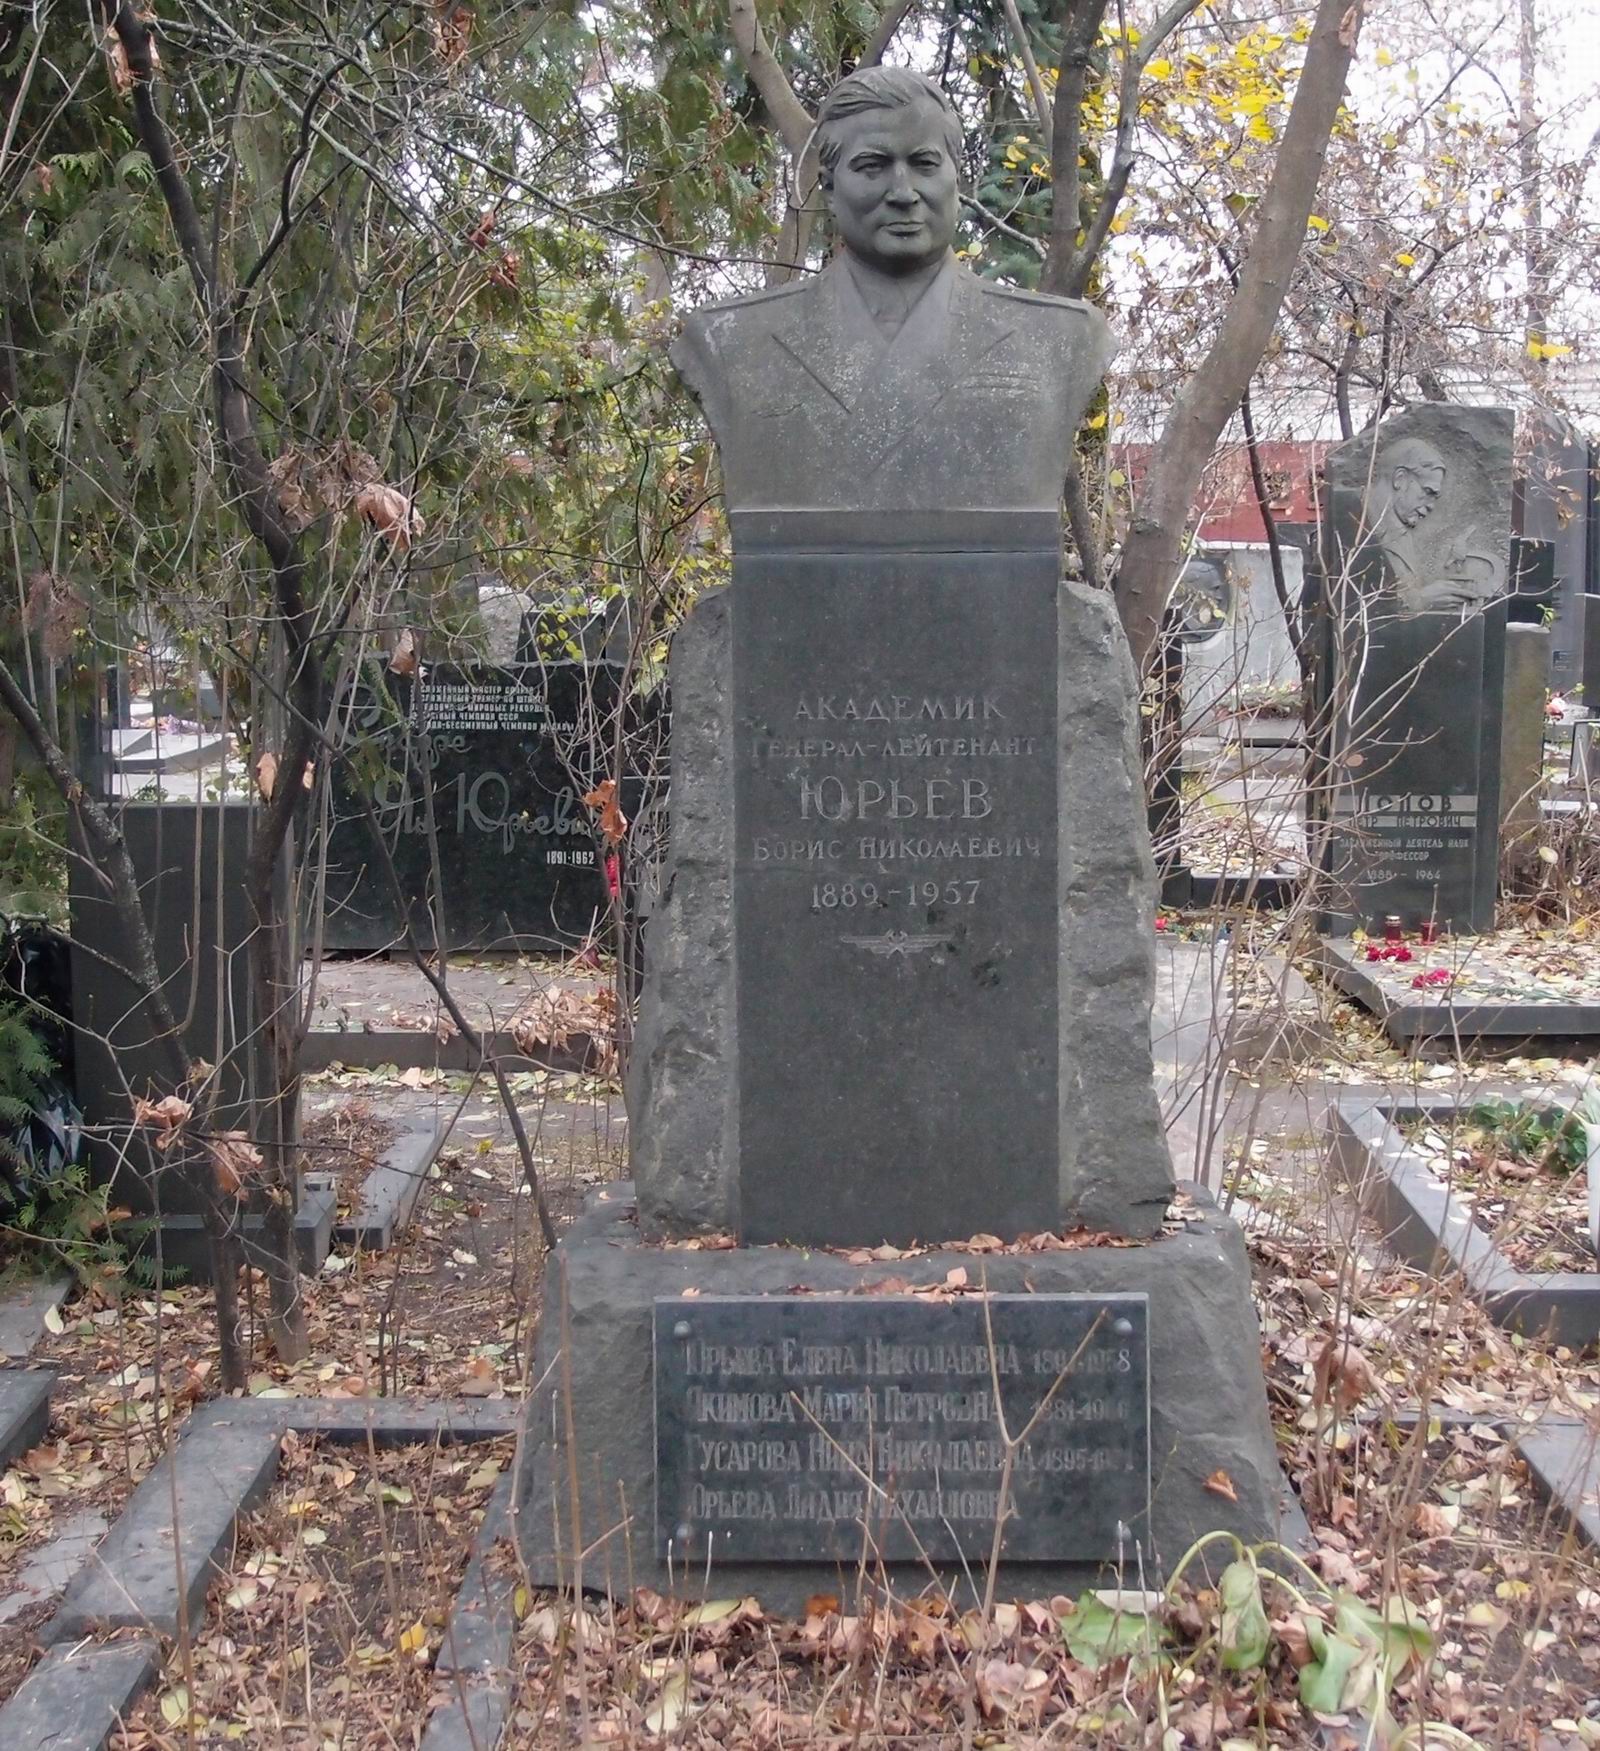 Памятник на могиле Юрьева Б.Н. (1889–1957), ск. М.Оленин, на Новодевичьем кладбище (3–53–10). Нажмите левую кнопку мыши чтобы увидеть фрагмент памятника.